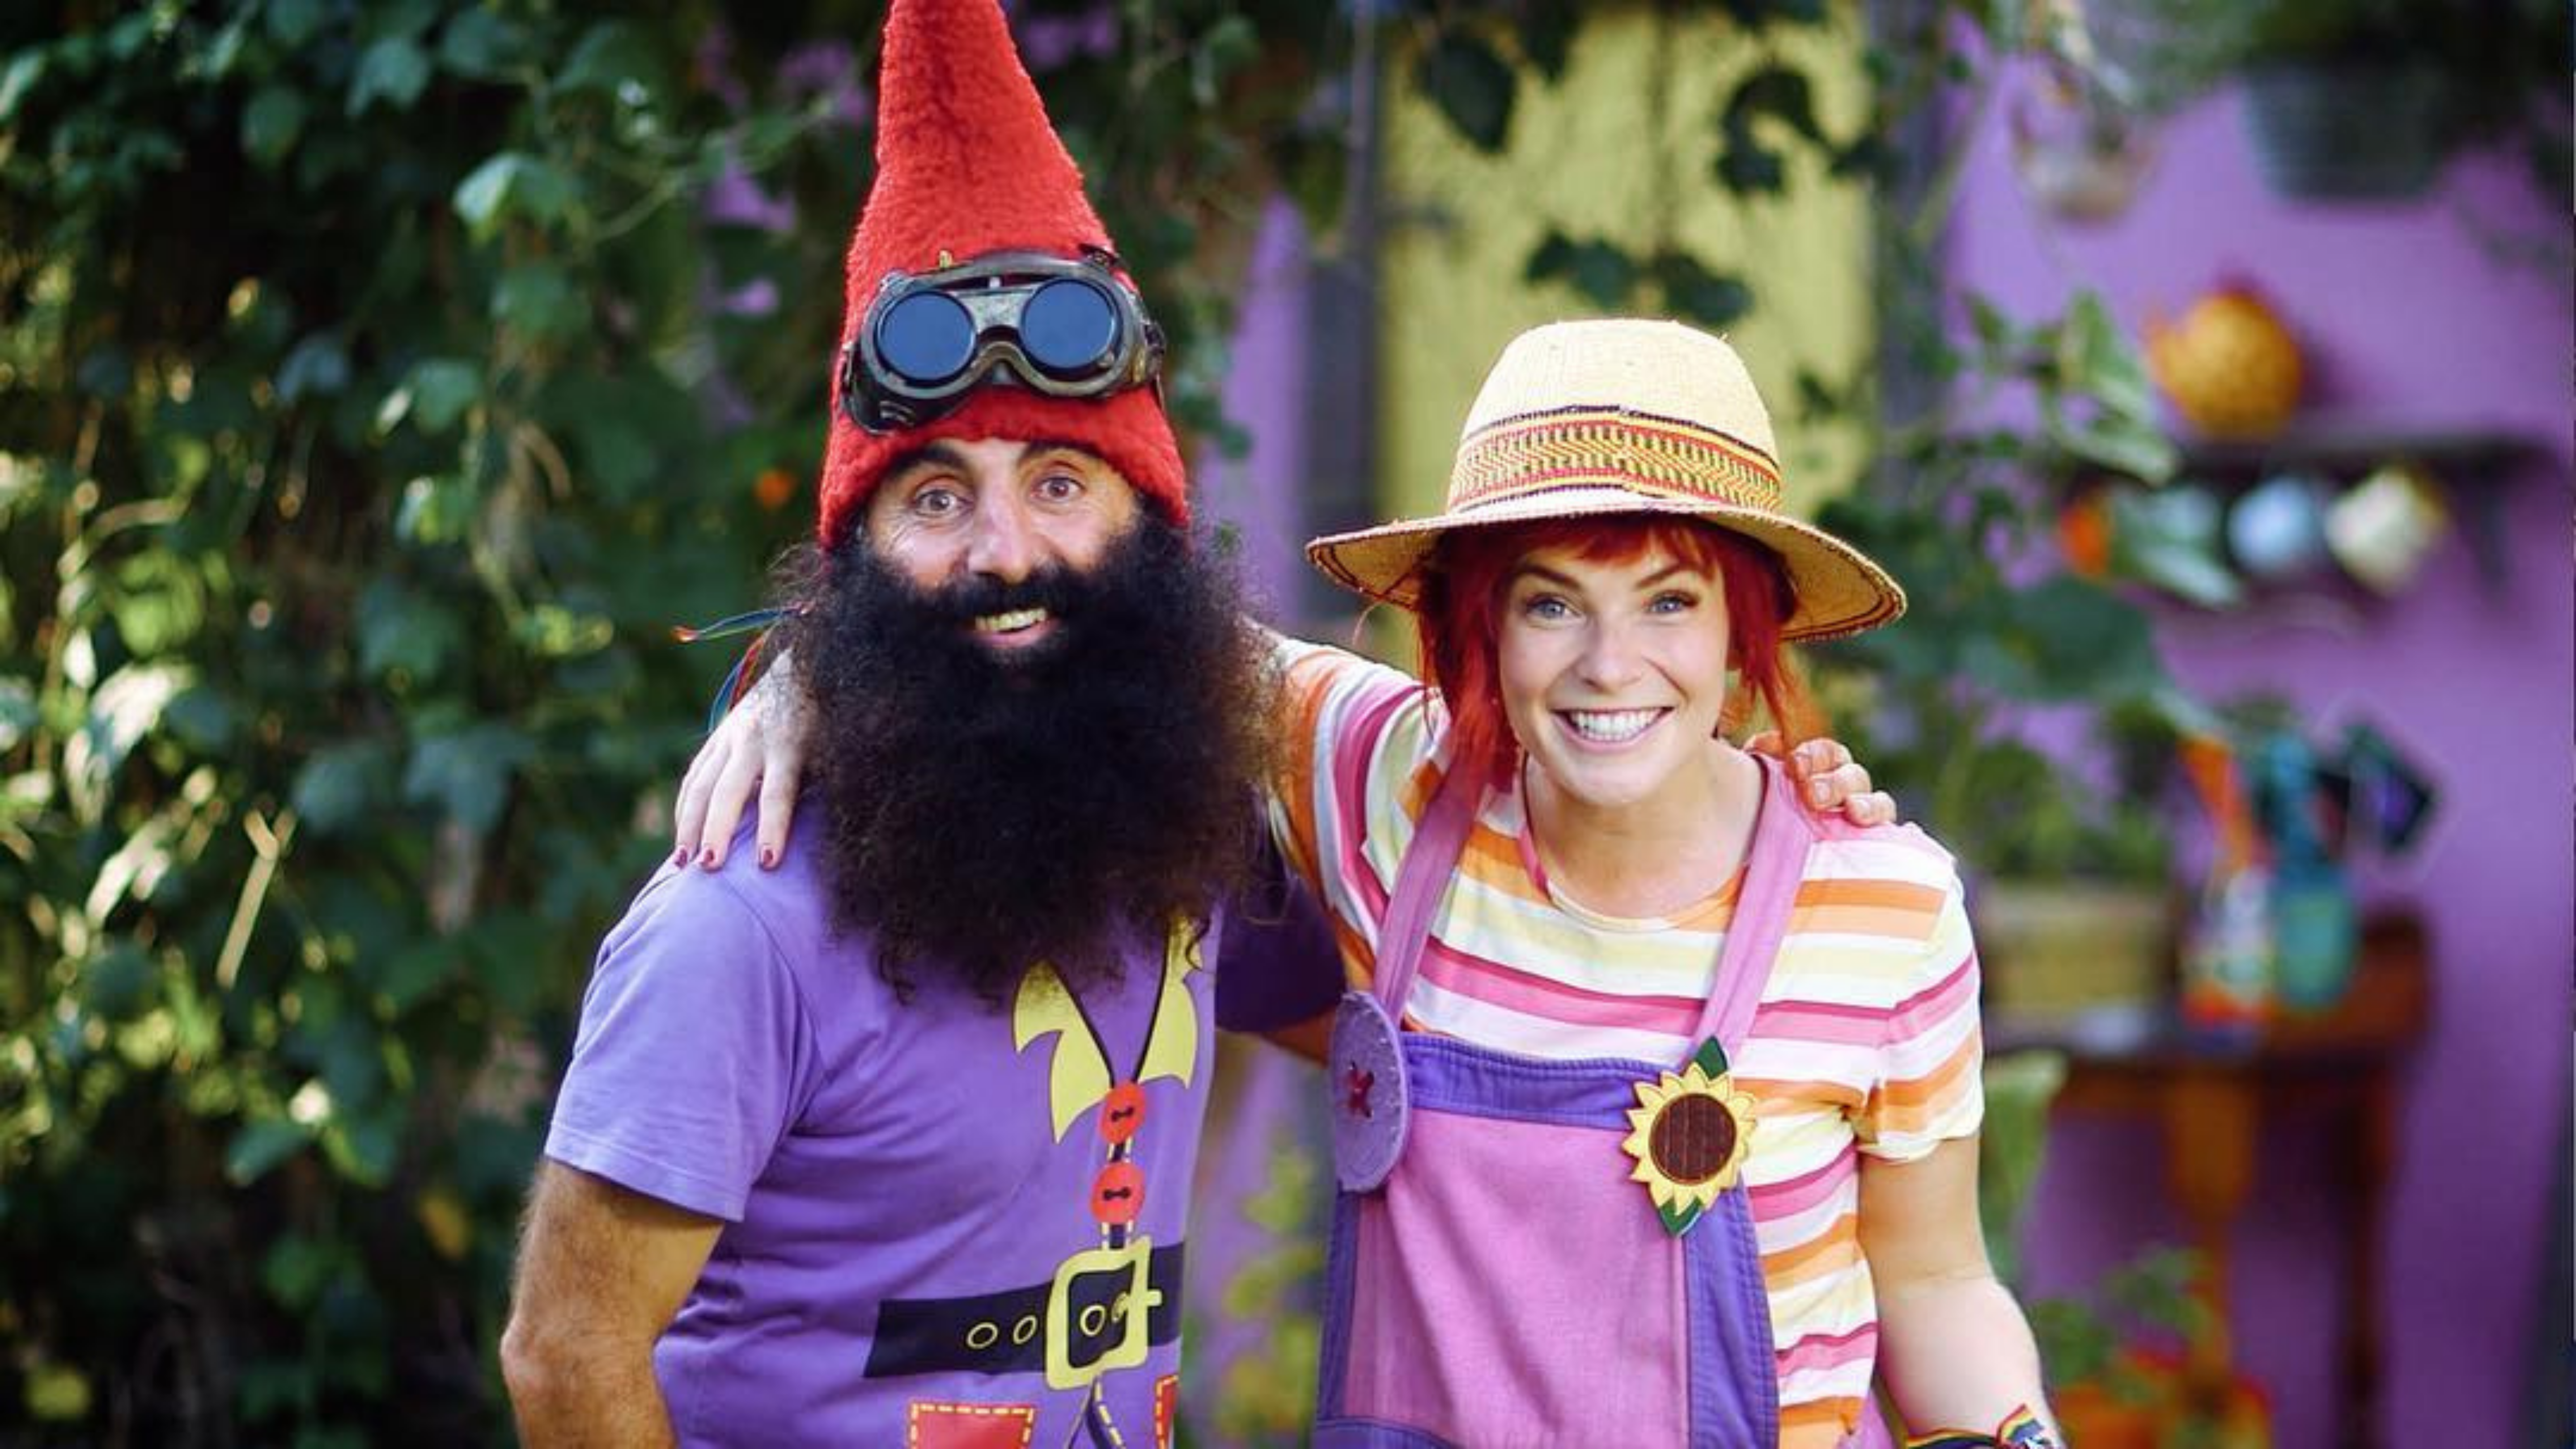 dirtgirl and Costa the Gnome at dirtgirlworld